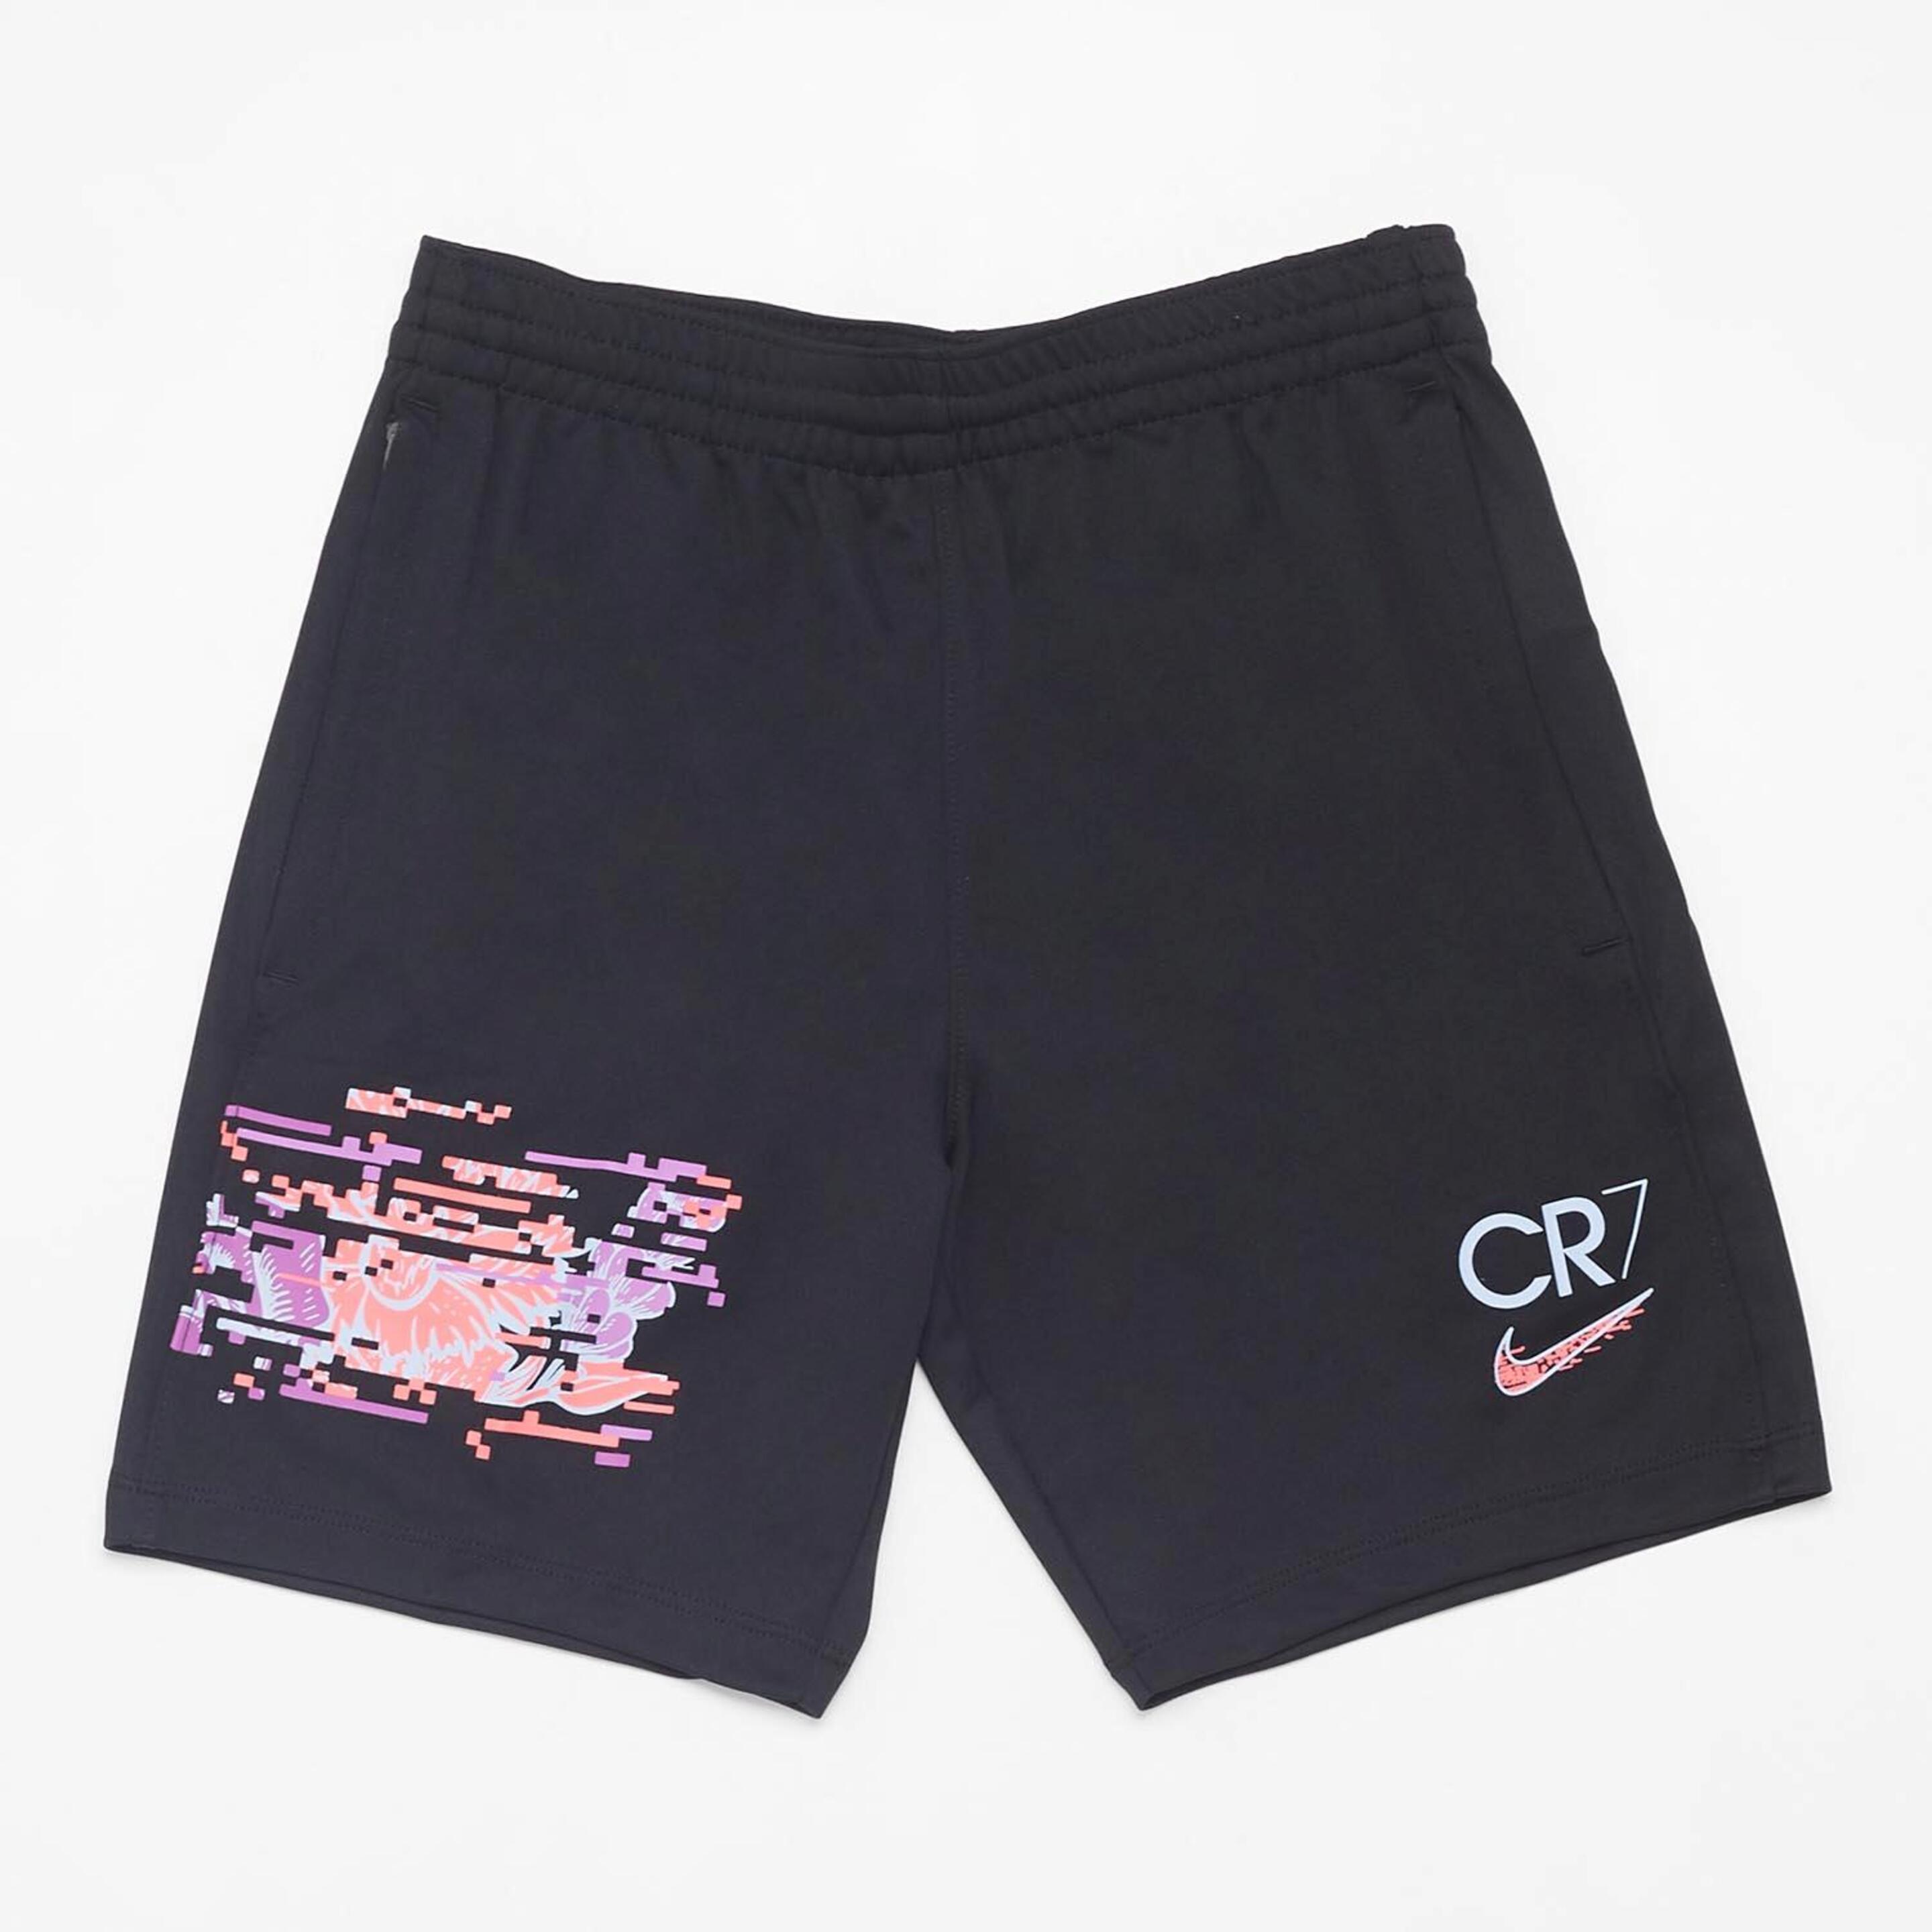 Nike Cr7 - negro - Pantalón Niño